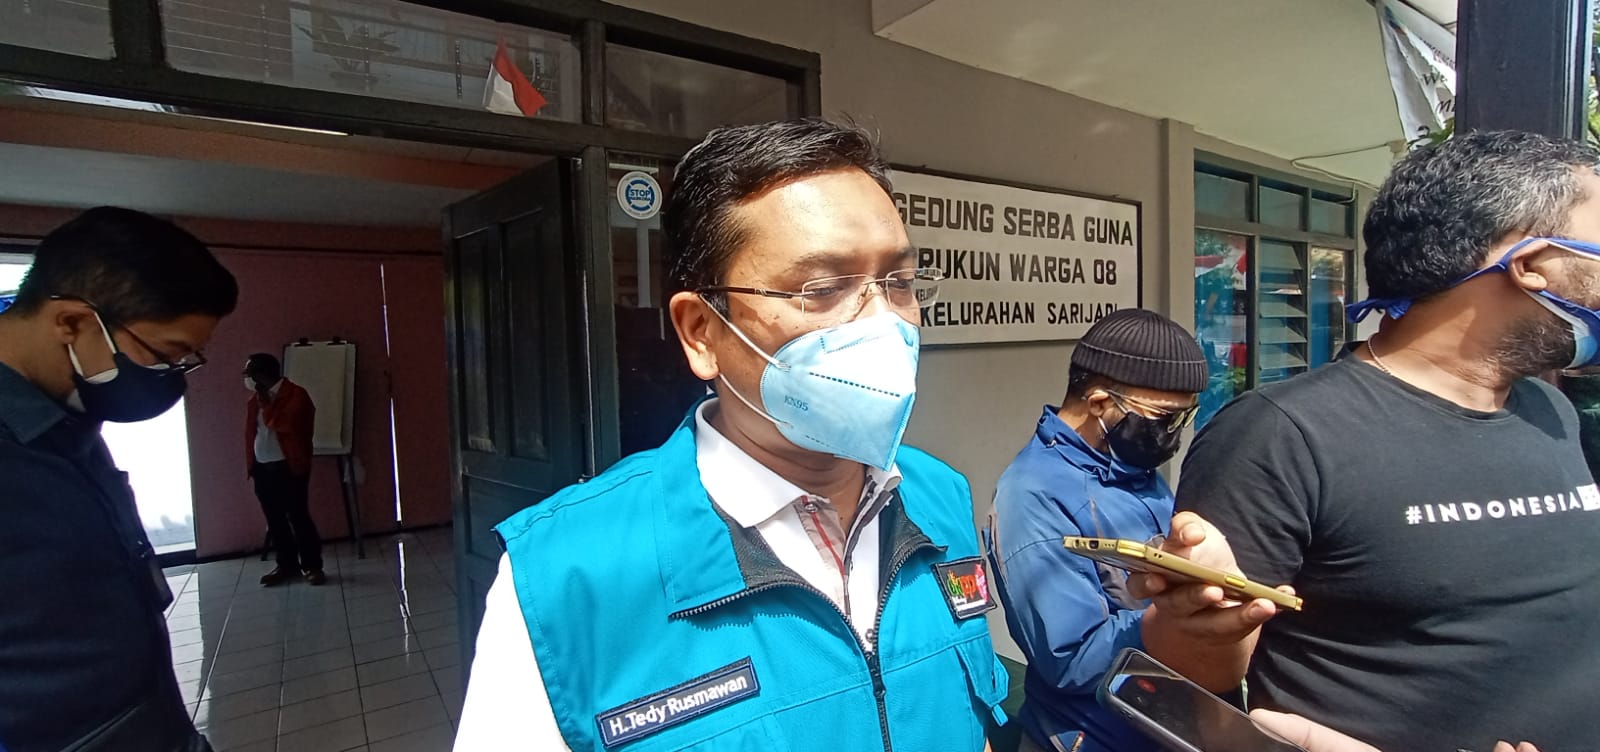 DPRD Kota Bandung Optimis Pelantikan Walkot dan Walwalkot Kurang dari 3 Bulan